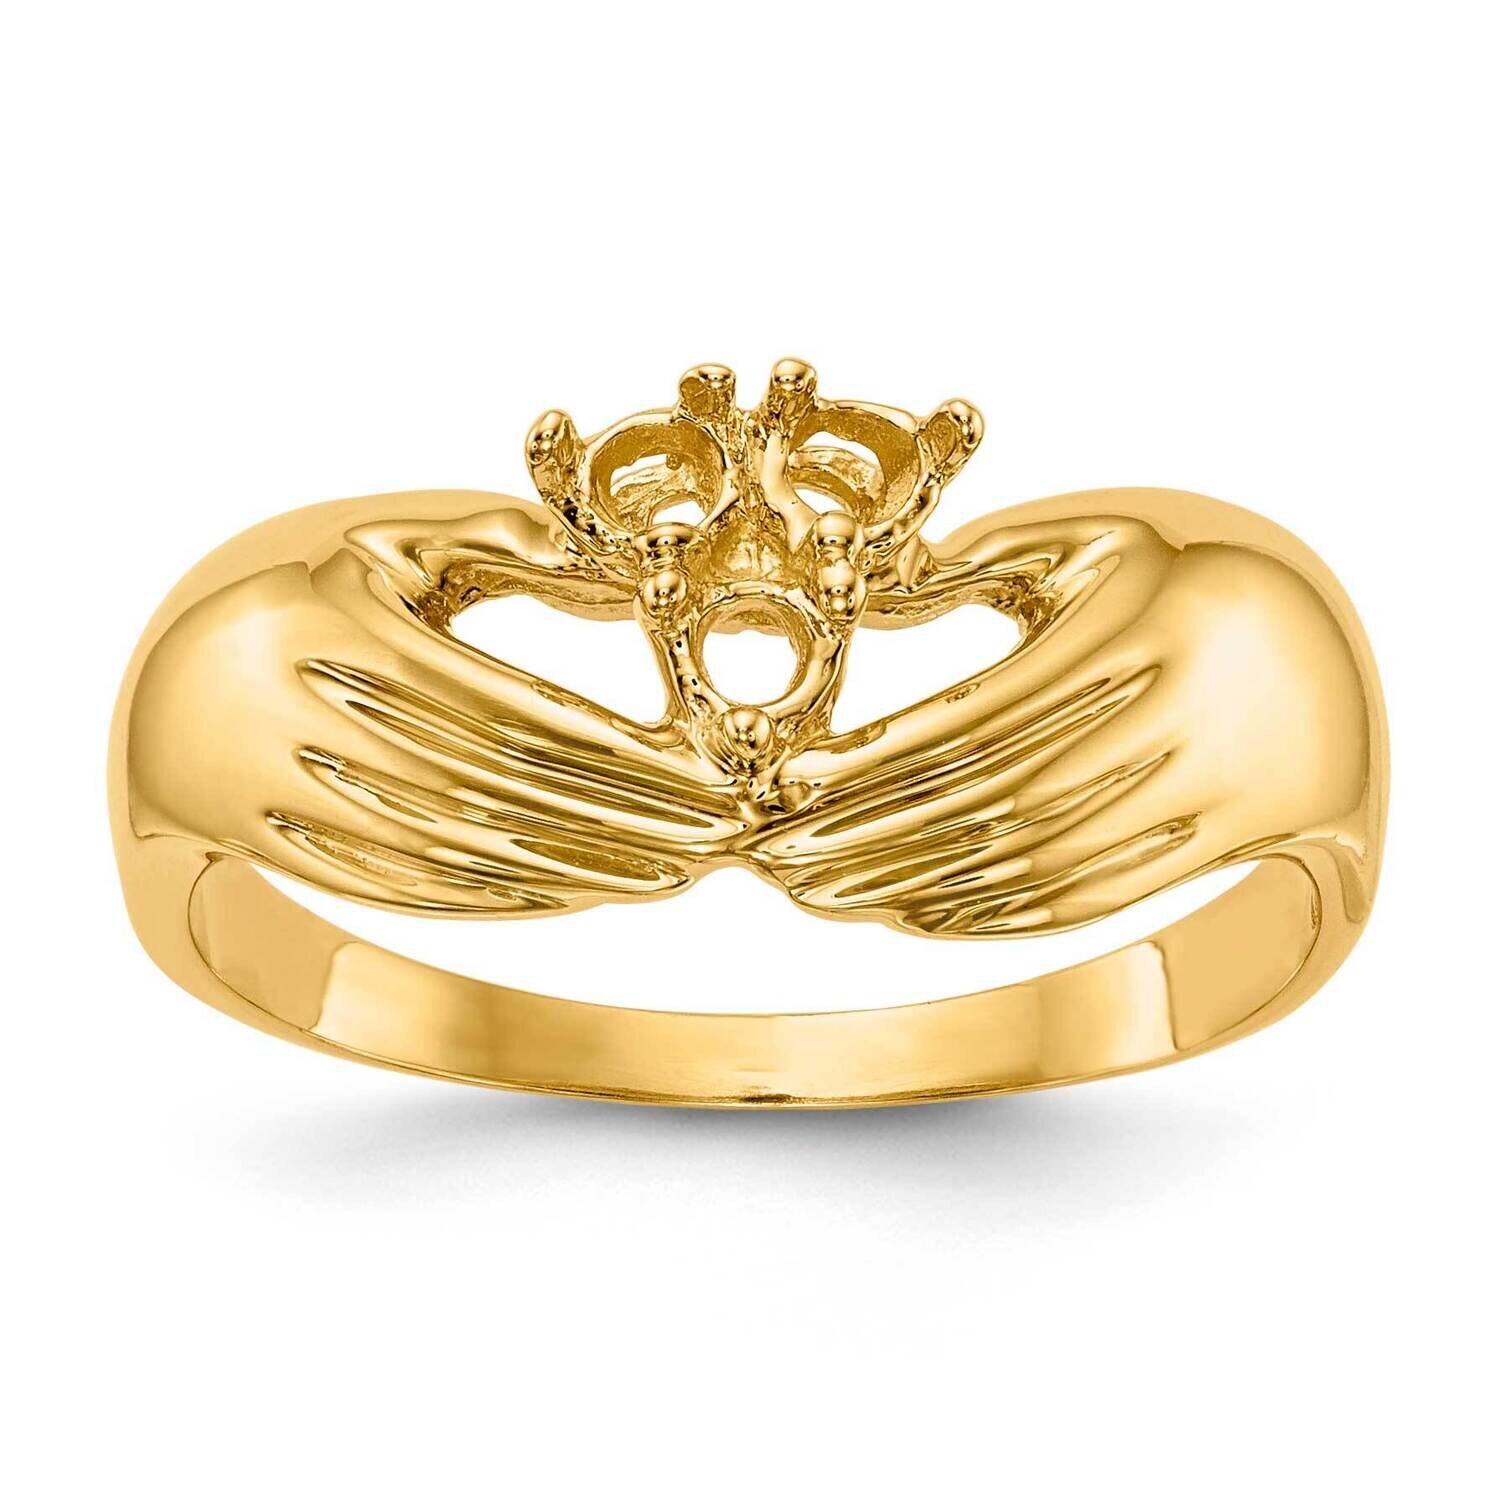 3 Stone Family Ring Mounting 14k Gold XMR51/3-7